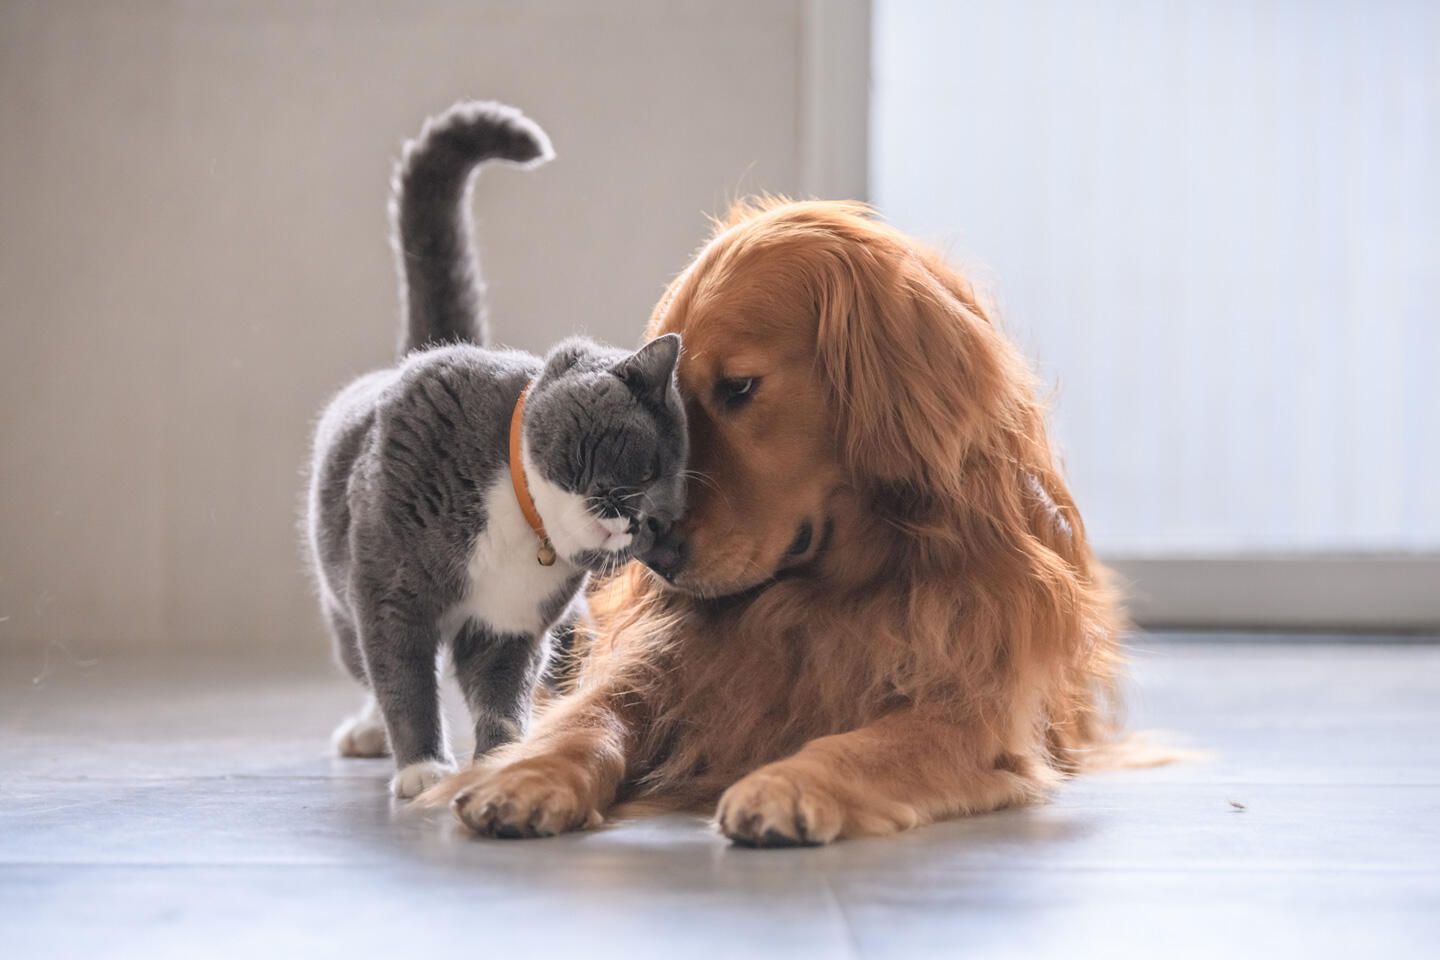 Un perro golden retriever y un gato gris y blanco se tocan tiernamente las narices, simbolizando la amistad entre diferentes especies. La imagen capta un momento de dulce interacción en un entorno interior con iluminación natural.